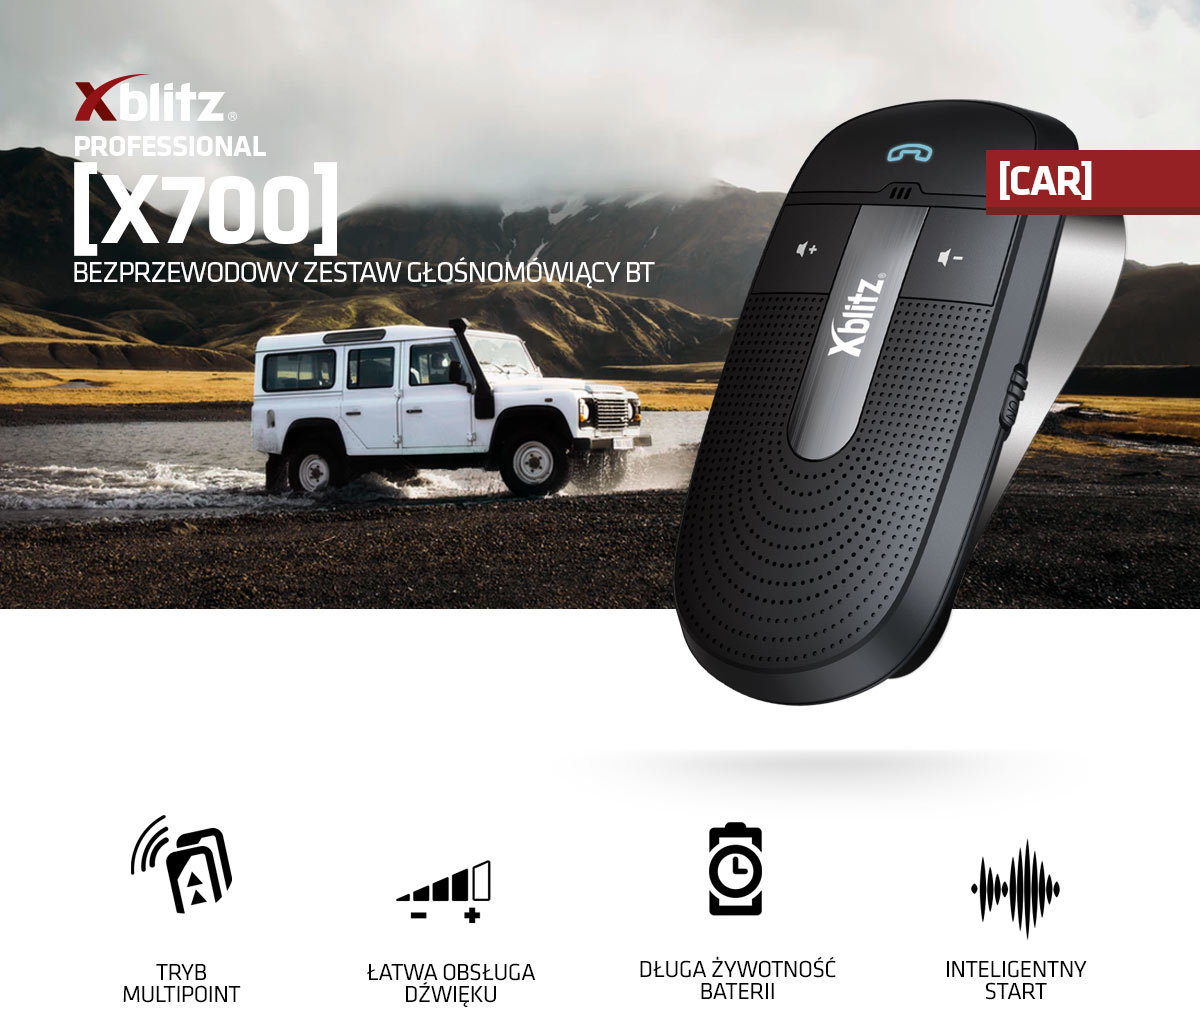 Zestaw głośnomowiący do samochodu Xblitz x700 Bluetooth na tle białego samochodu w górach